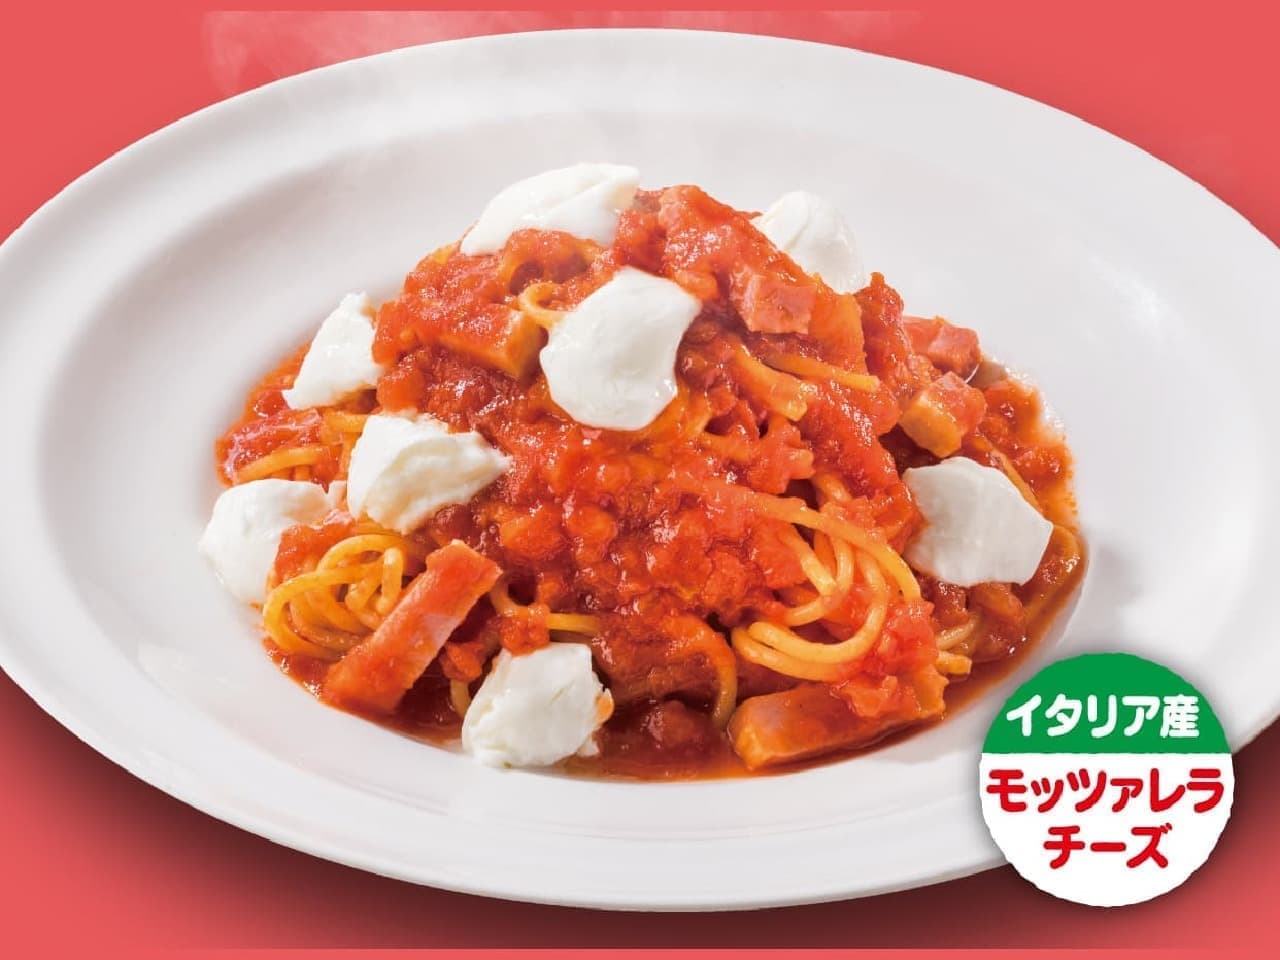 Gust "Tomato Sauce Spaghetti Mozzarella Cheese Topping"